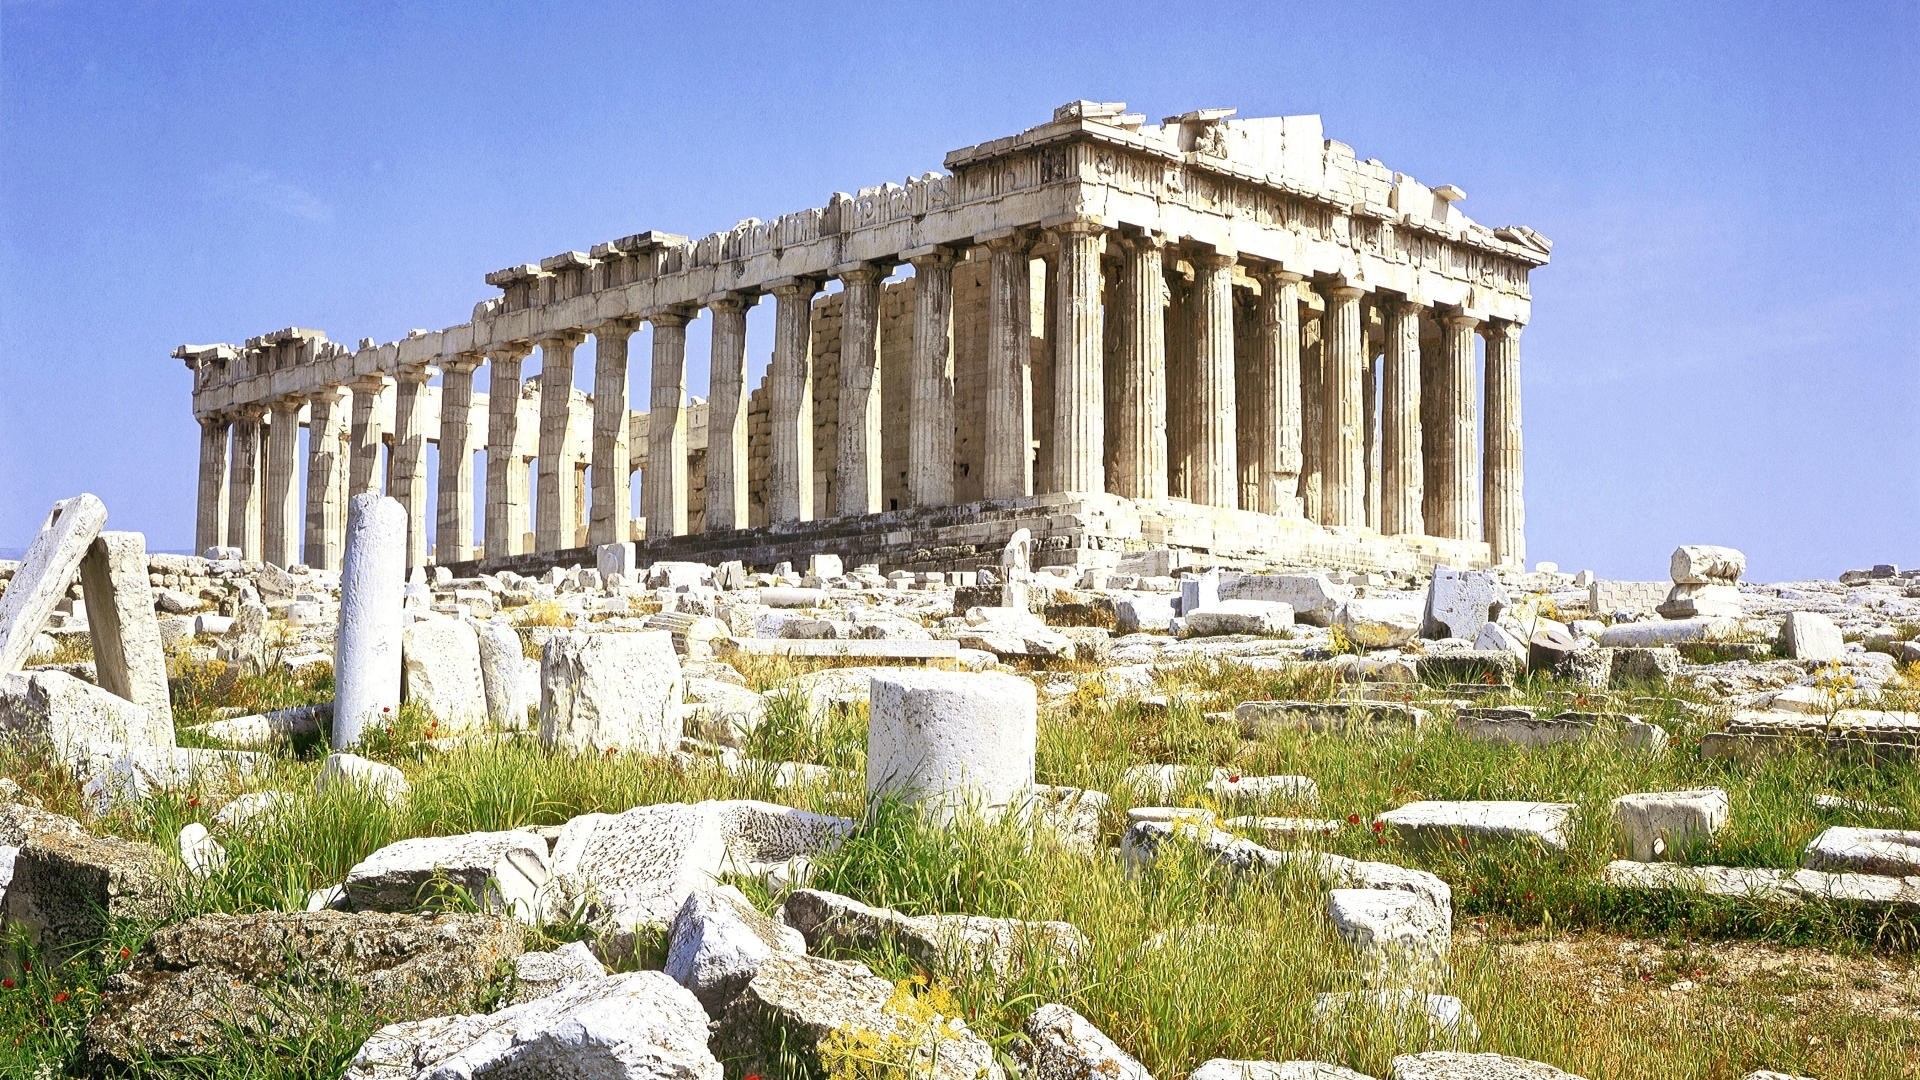 Building architecture parthenon greek ancient greece